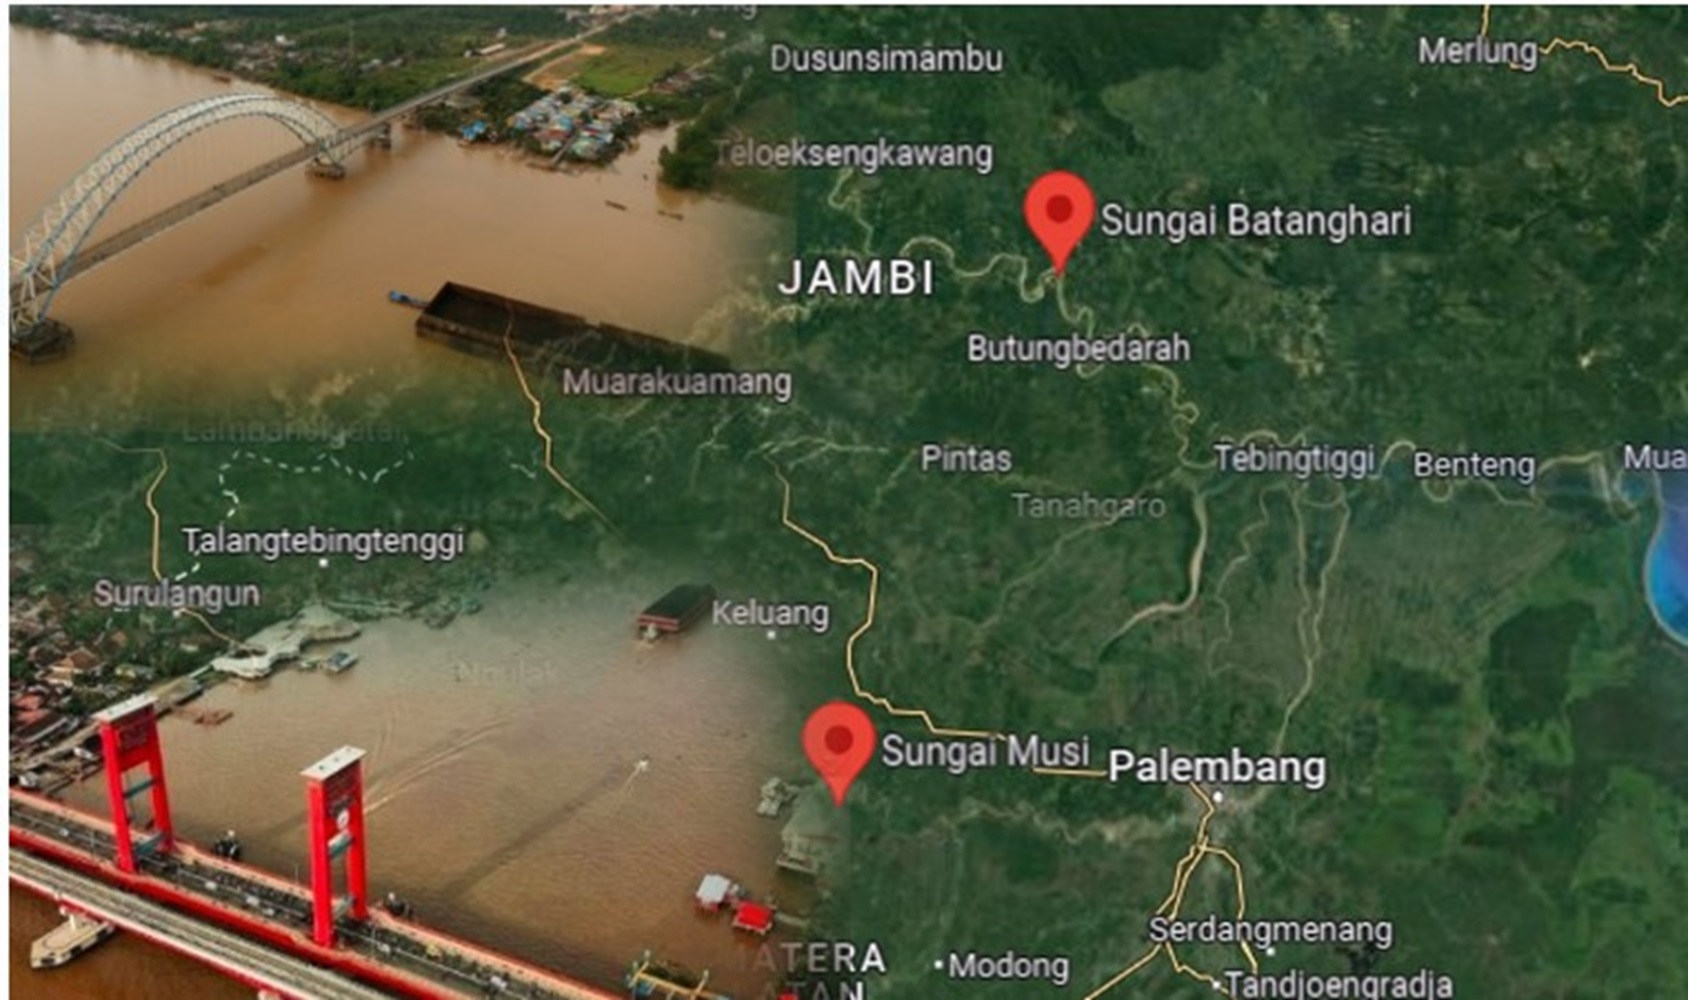 5 Sungai Terpanjang di Sumatera, Ada Sungai Batang Hari dan Sungai Musi di Palembang 